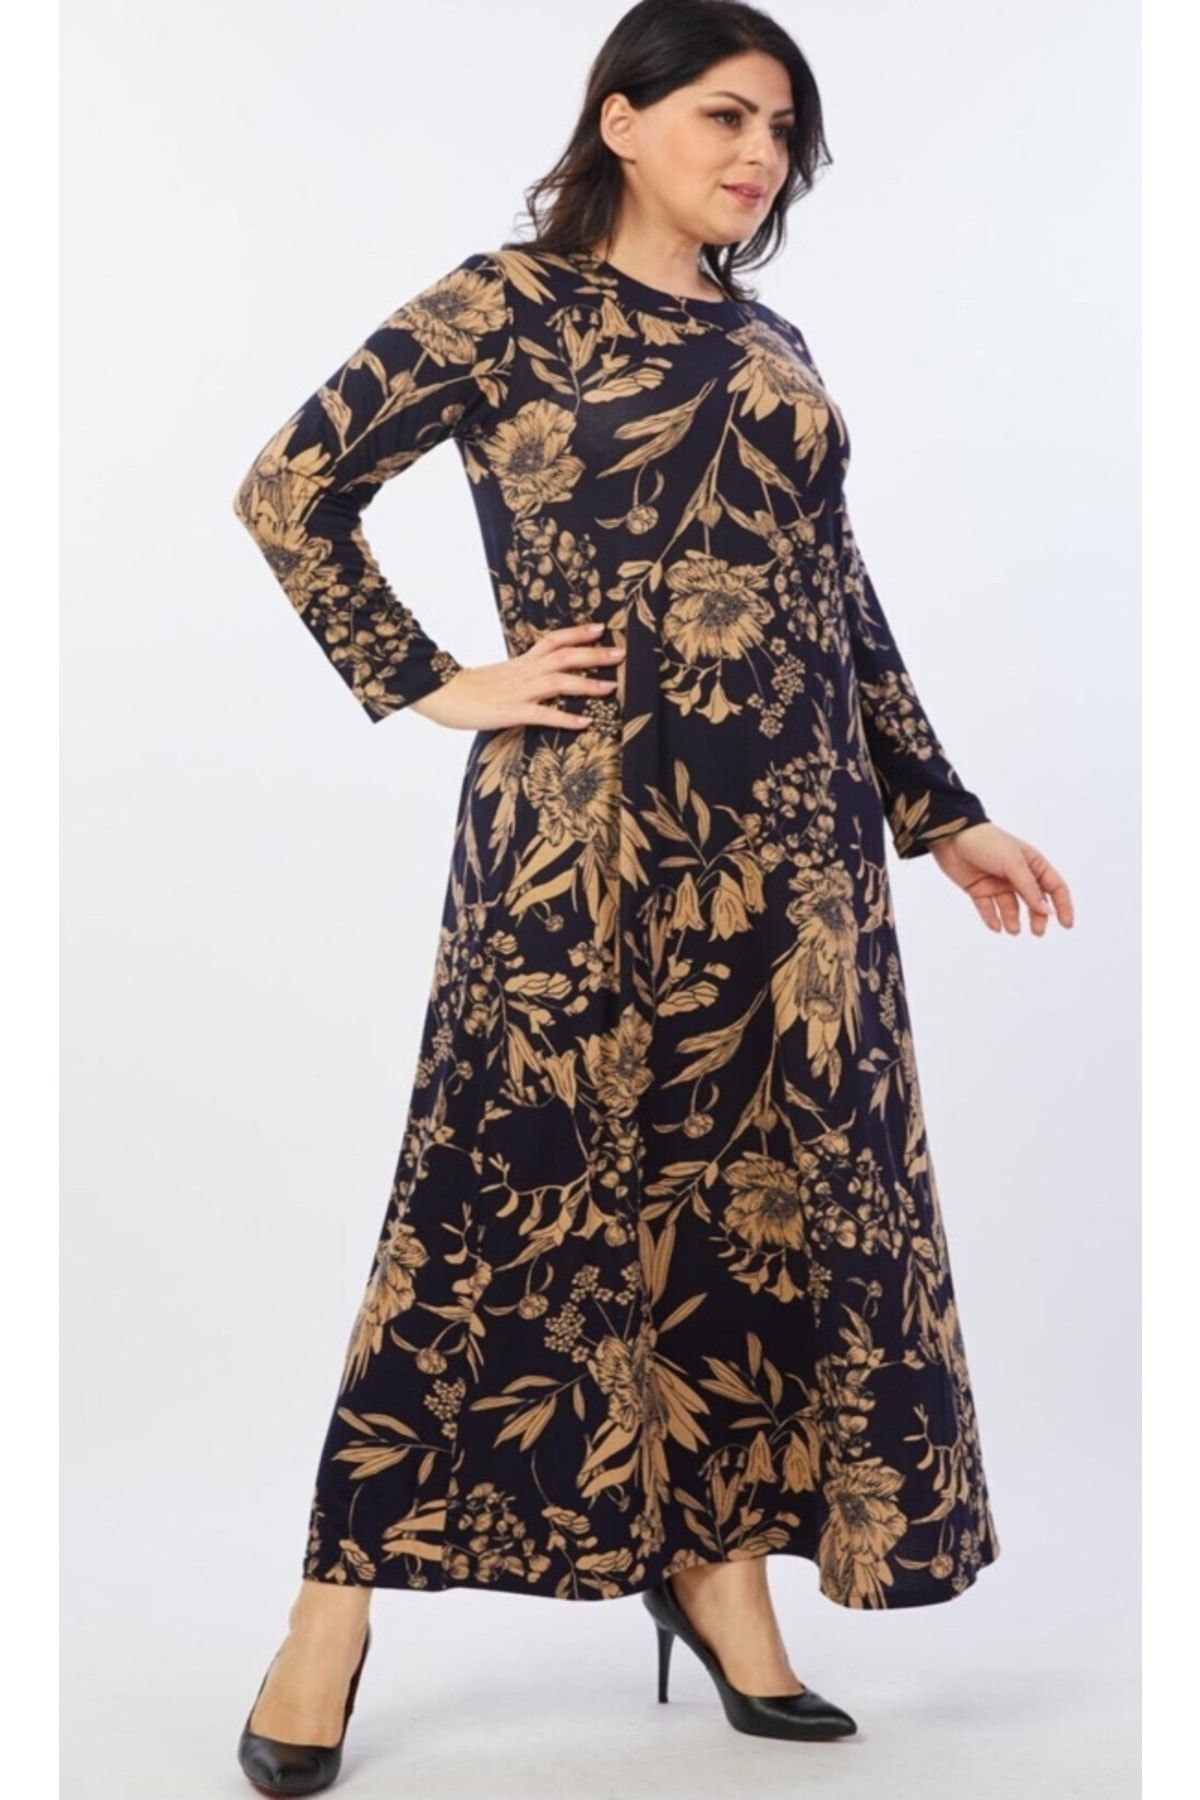 Şirin Butik Kadın Lacivert Çiçek Desenli Esnek Viskon Elbise